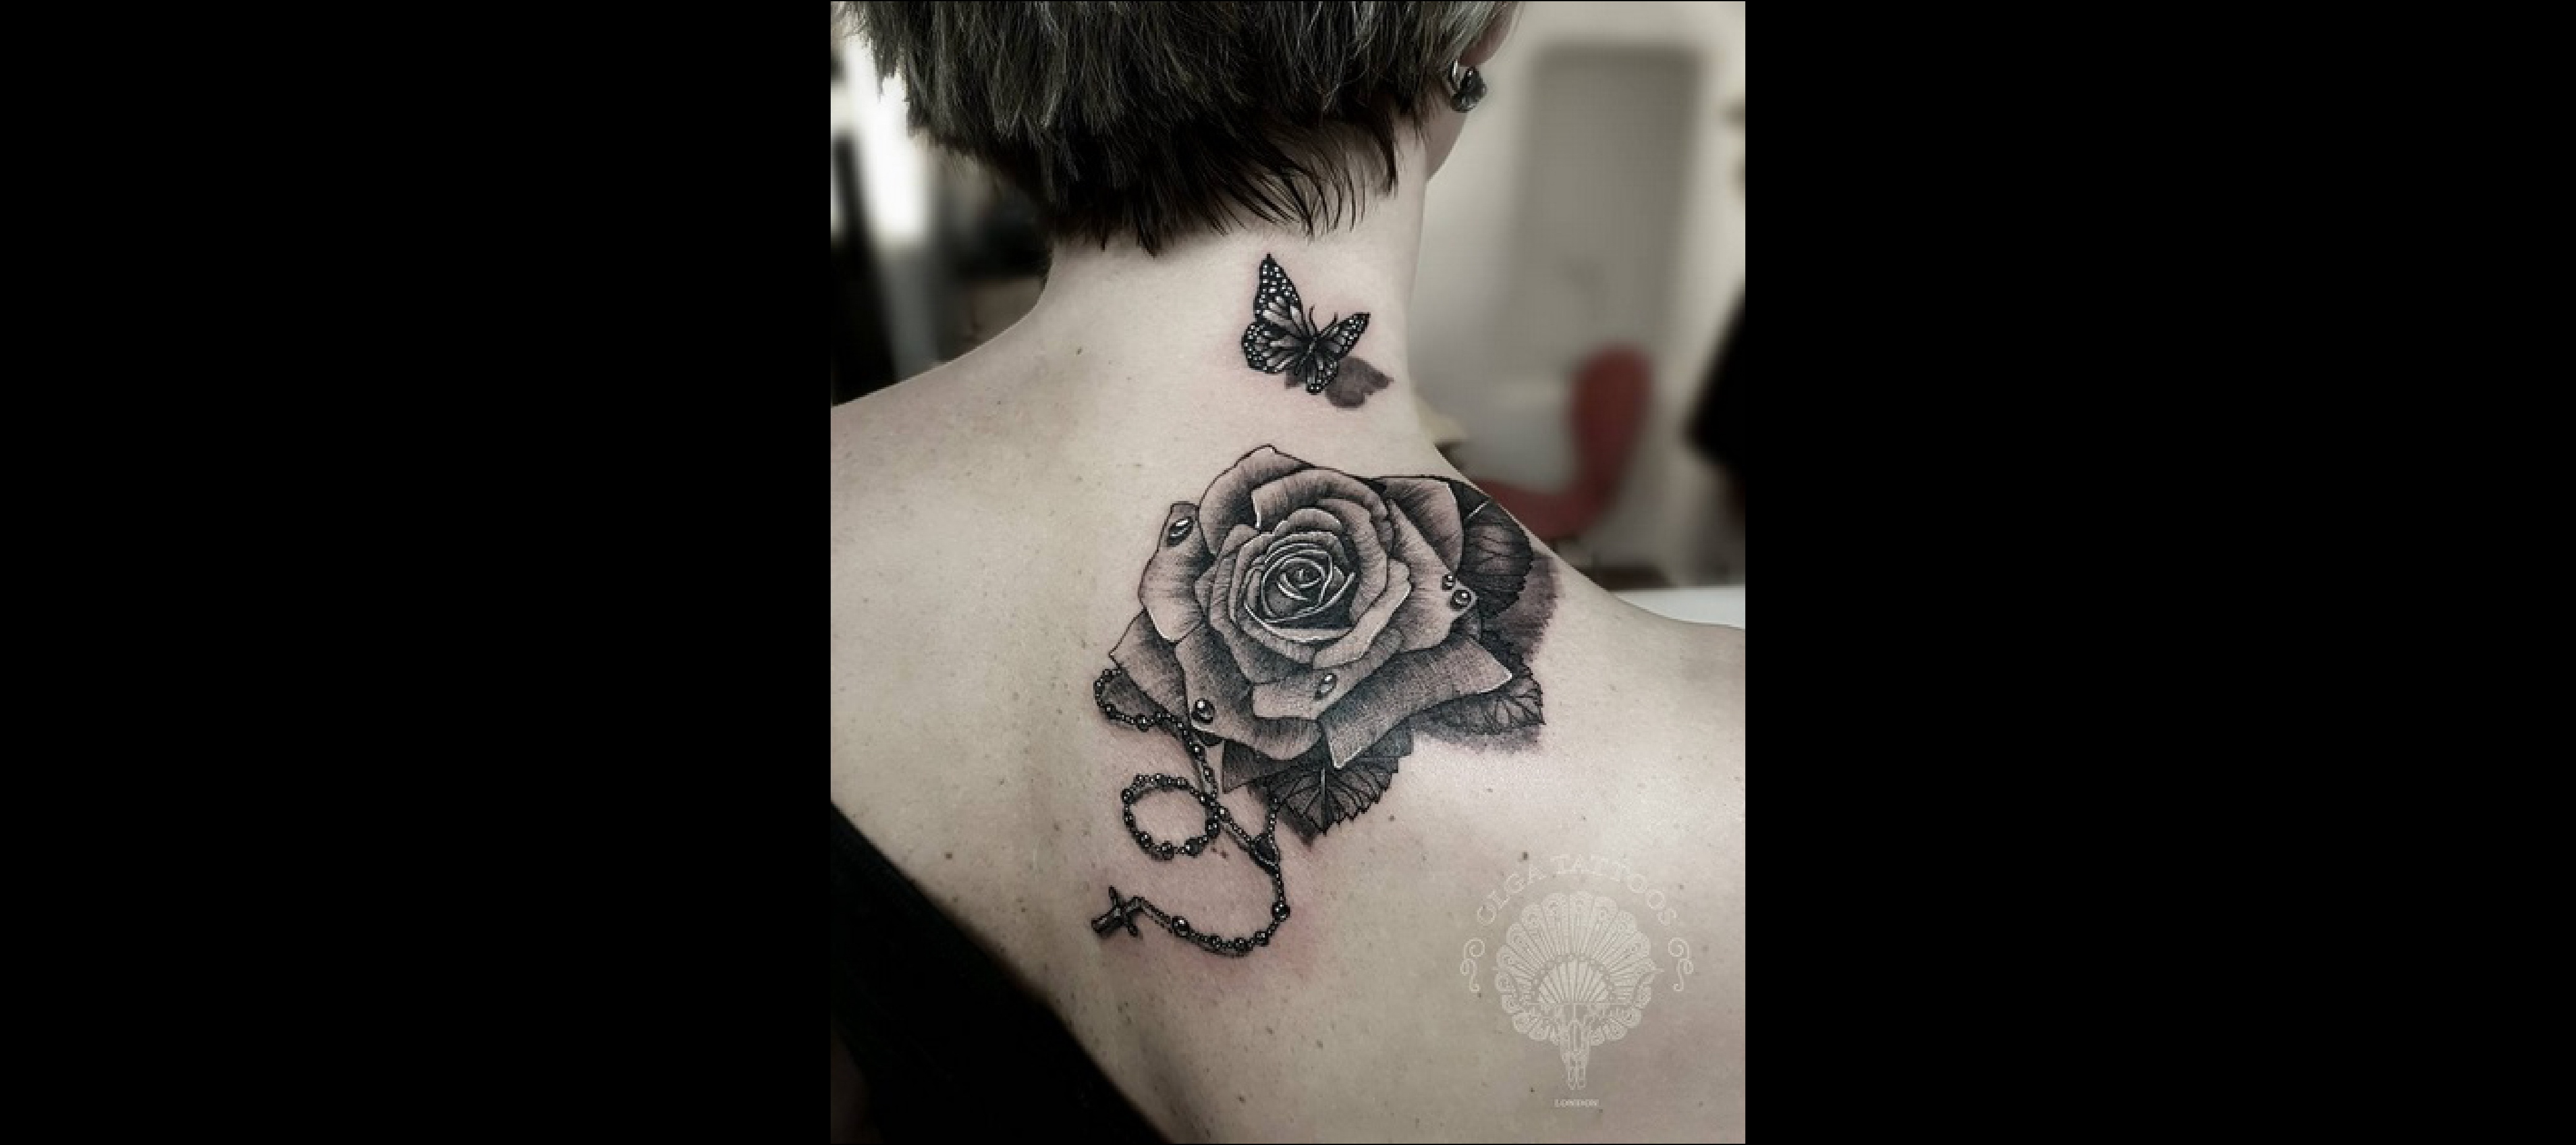 Olga_tattoos, via Instagram 